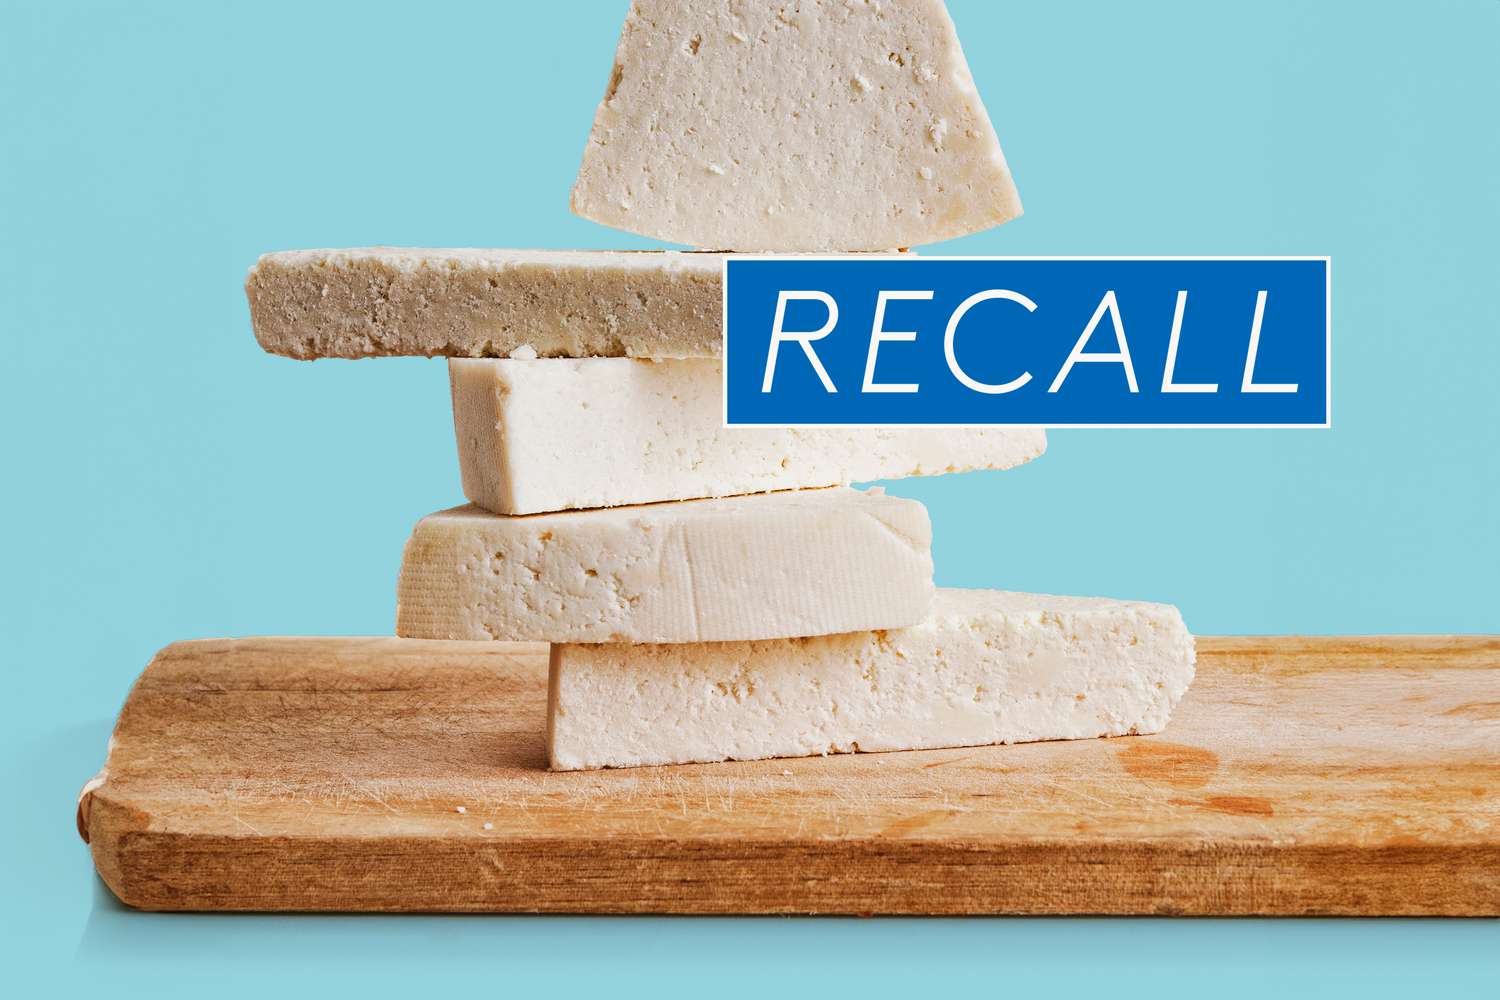 Alertă de rechemare a brânzilor: sperierea Listeria la nivel național